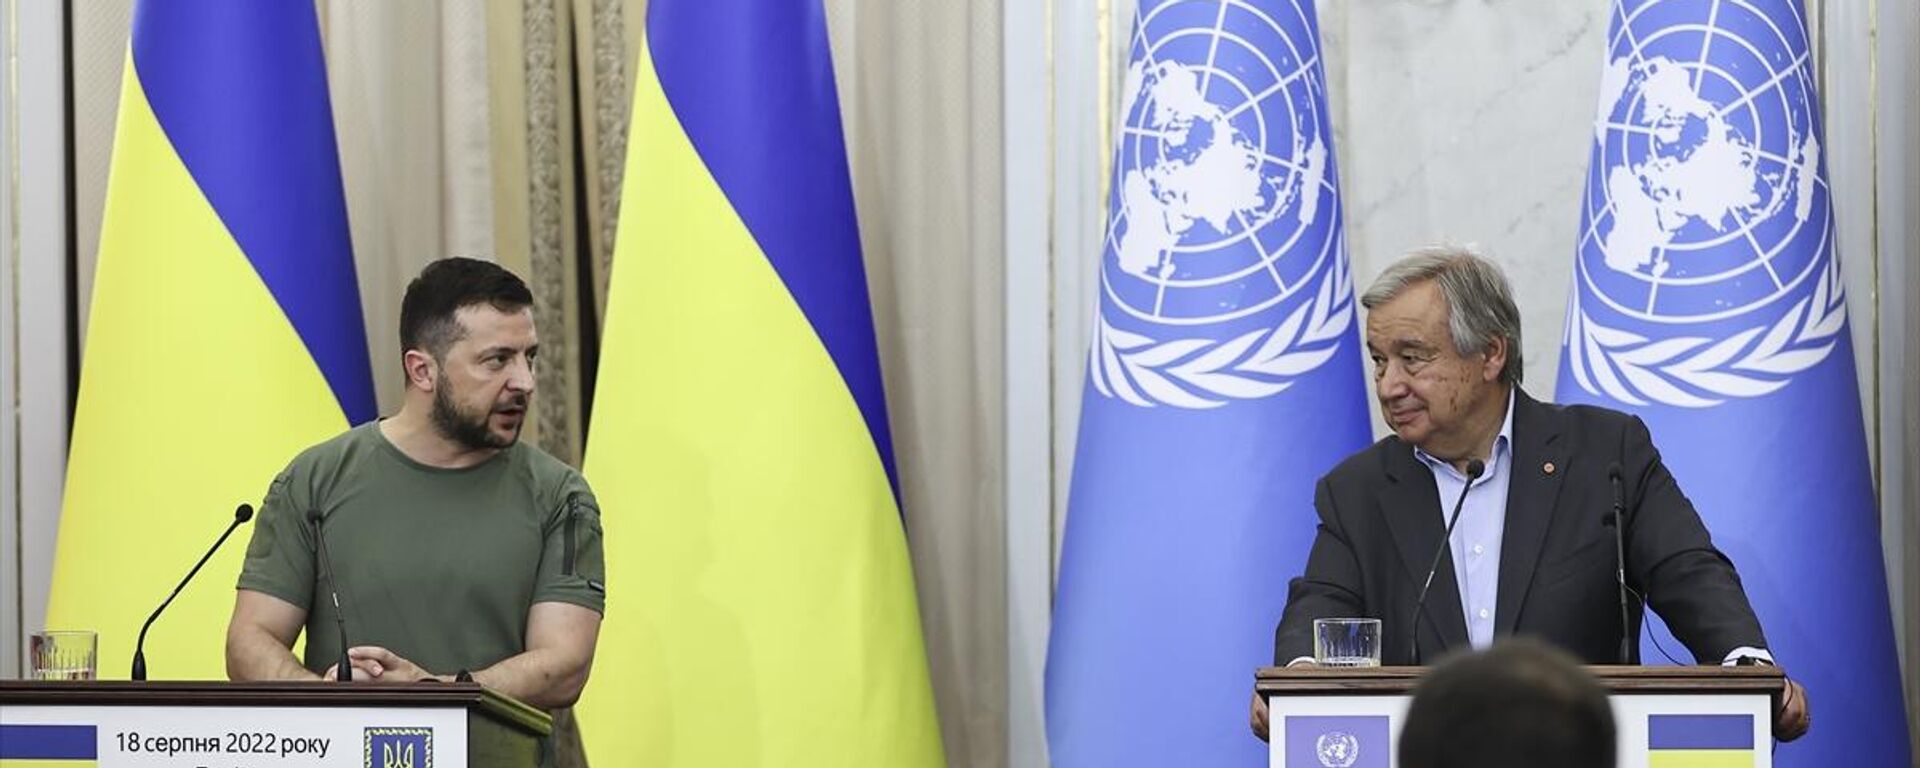 Birleşmiş Milletler (BM) Genel Sekreteri Antonio Guterres ve Ukrayna Devlet Başkanı Vladimir Zelenskiy - Sputnik Türkiye, 1920, 19.08.2022